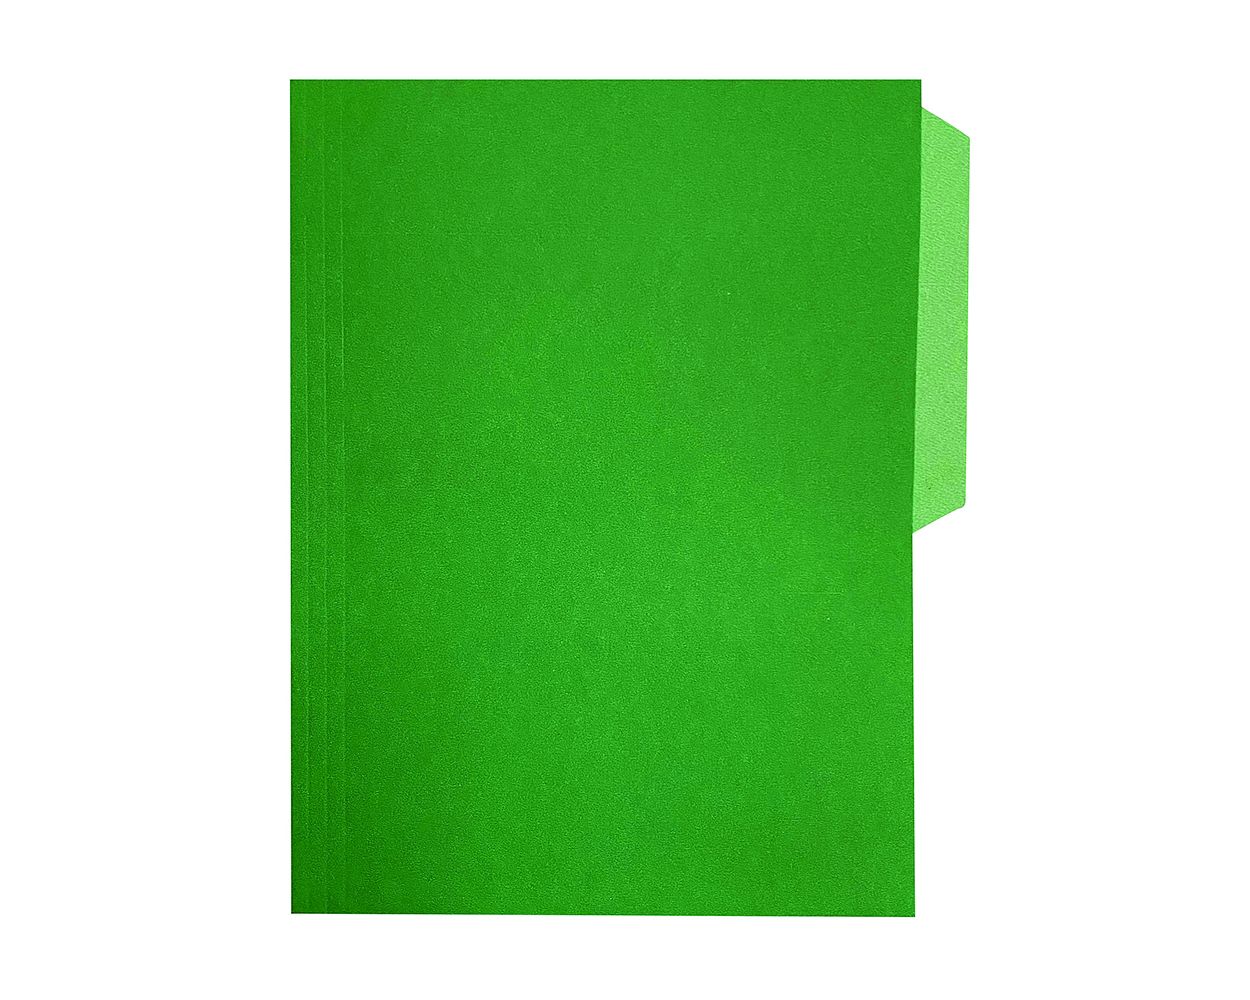 LM-Fólder tamaño oficio verde c/100 Fólder de 1/2 ceja, color verde, Fortec, elaborado en cartulina bristol de 162 grs / 9.5 pts tamaño oficio, medidas: 23.8 X 34.5 cm, suaje lateral y superior para broche de 8 cm y ceja redondeada, 1 paquete con 100 fólders. - FORTEC